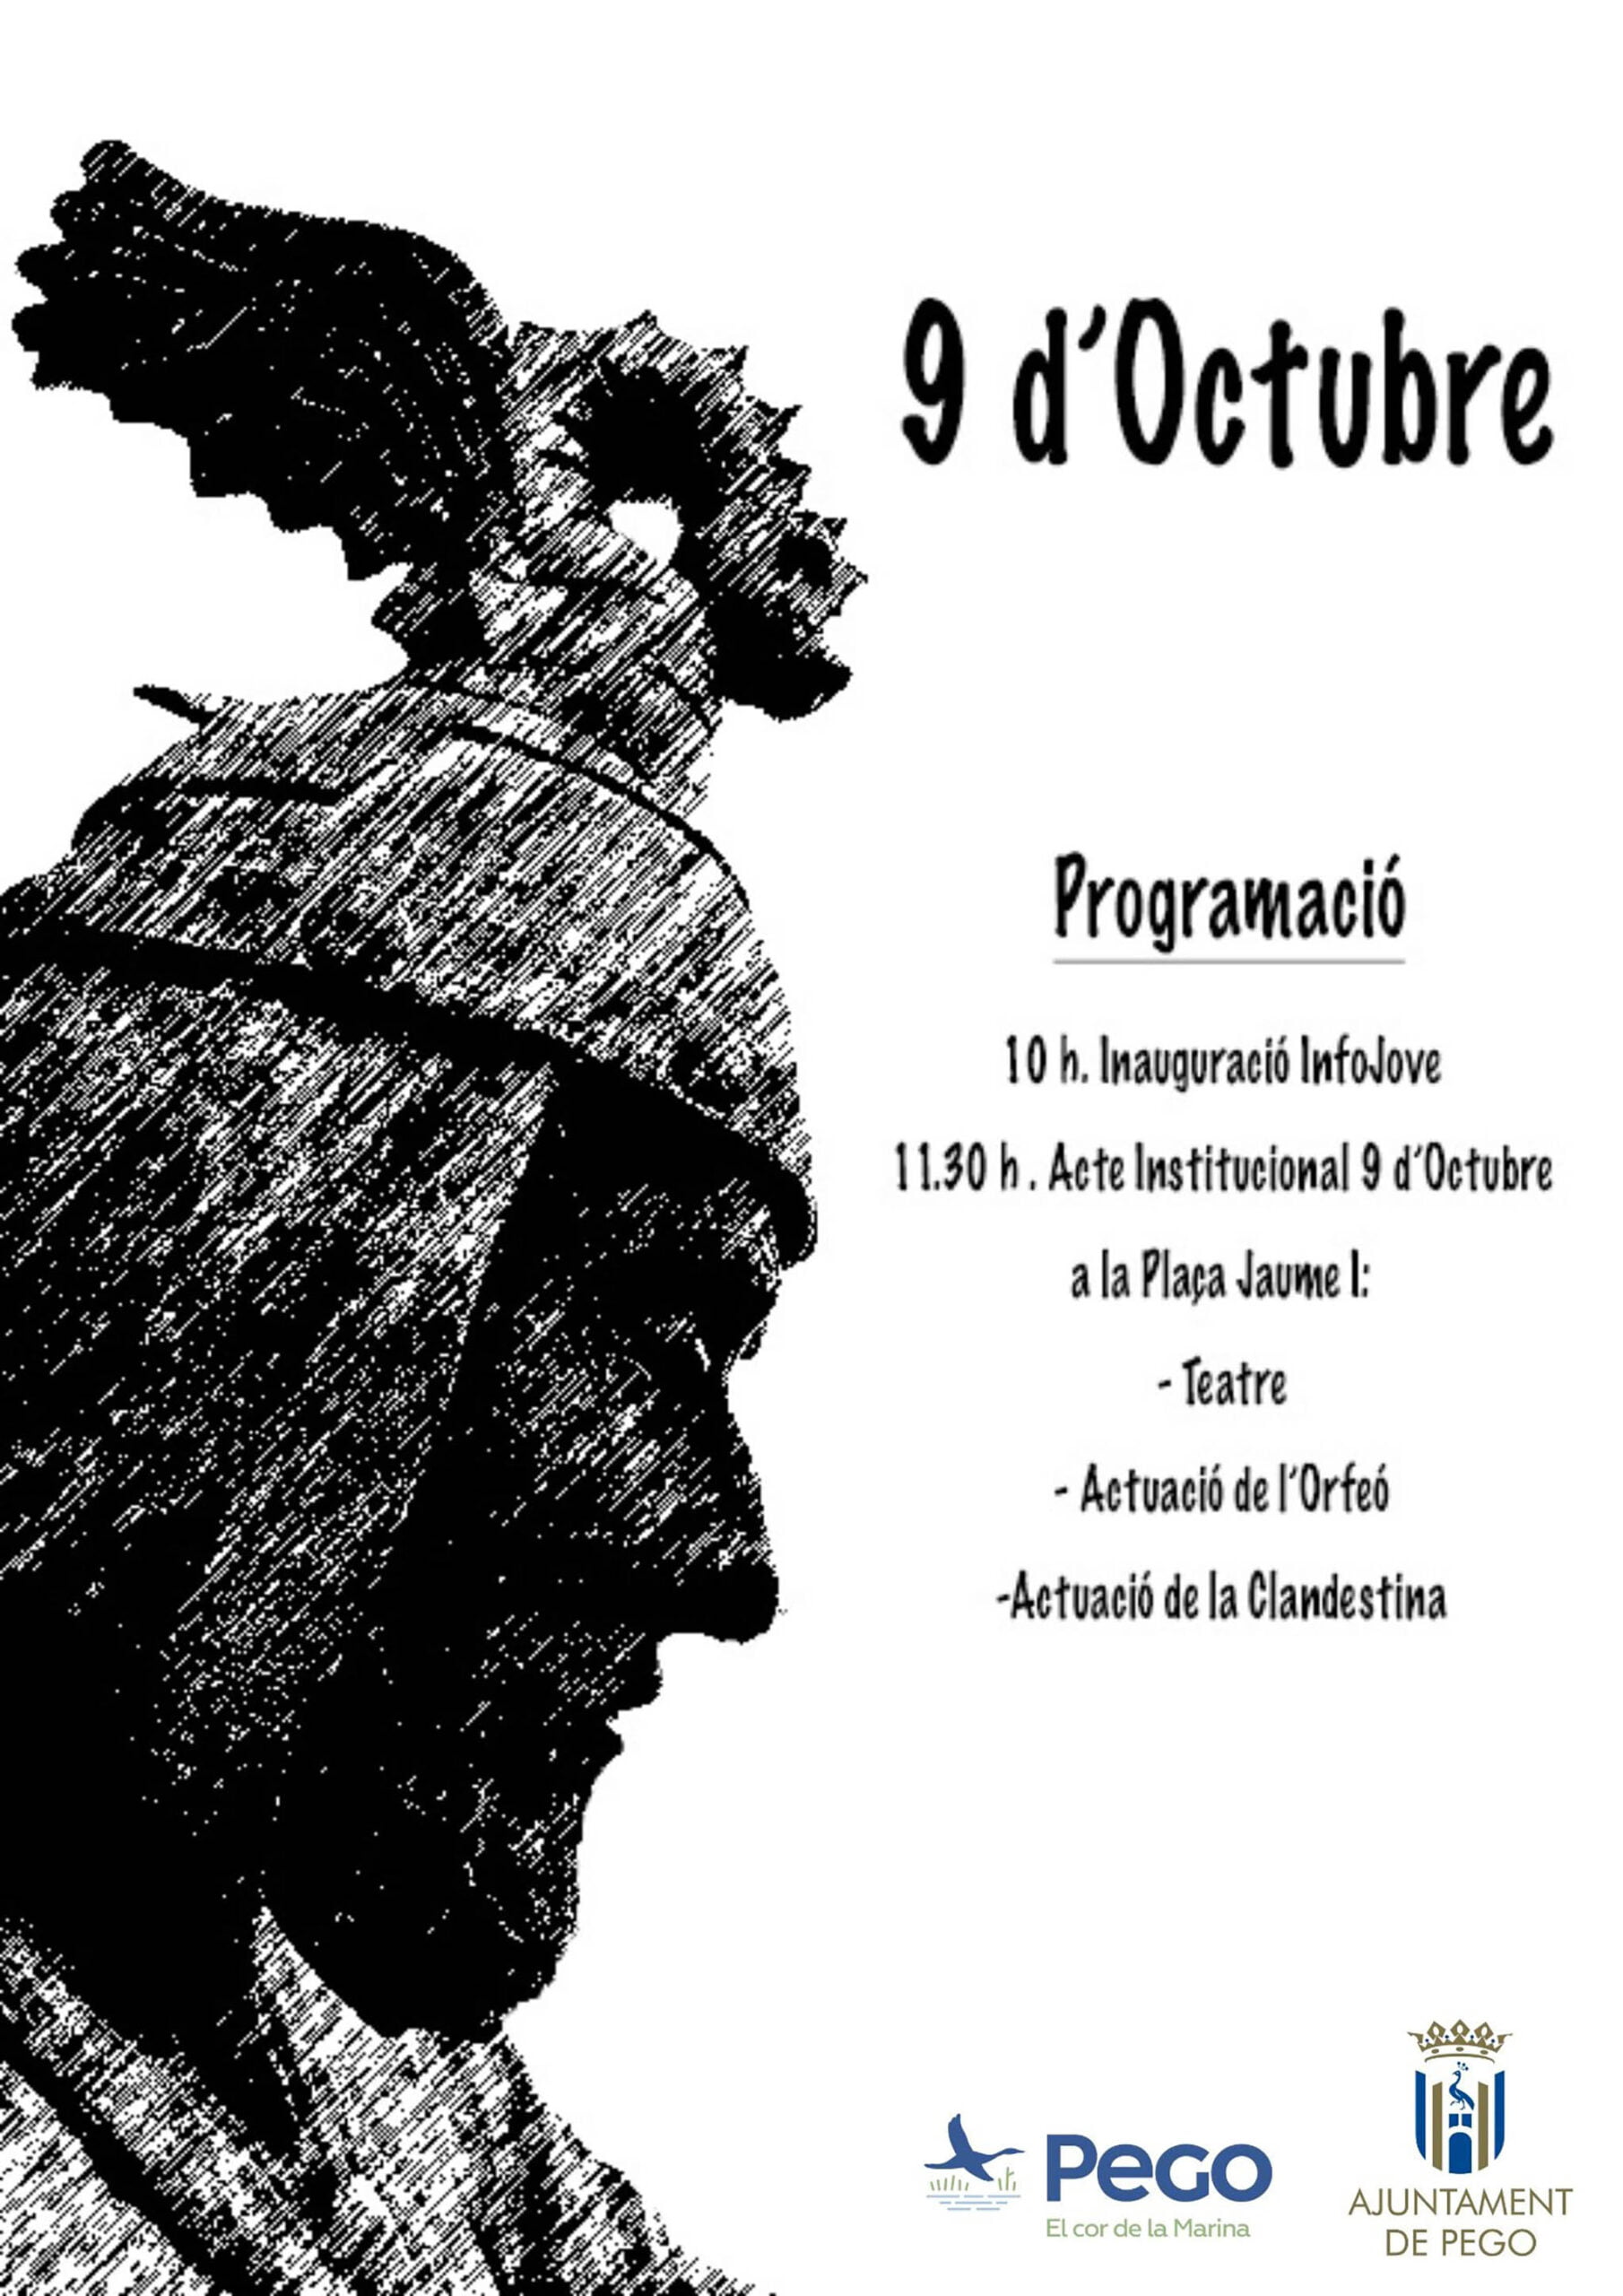 Programación para el 9 d’Octubre en Pego